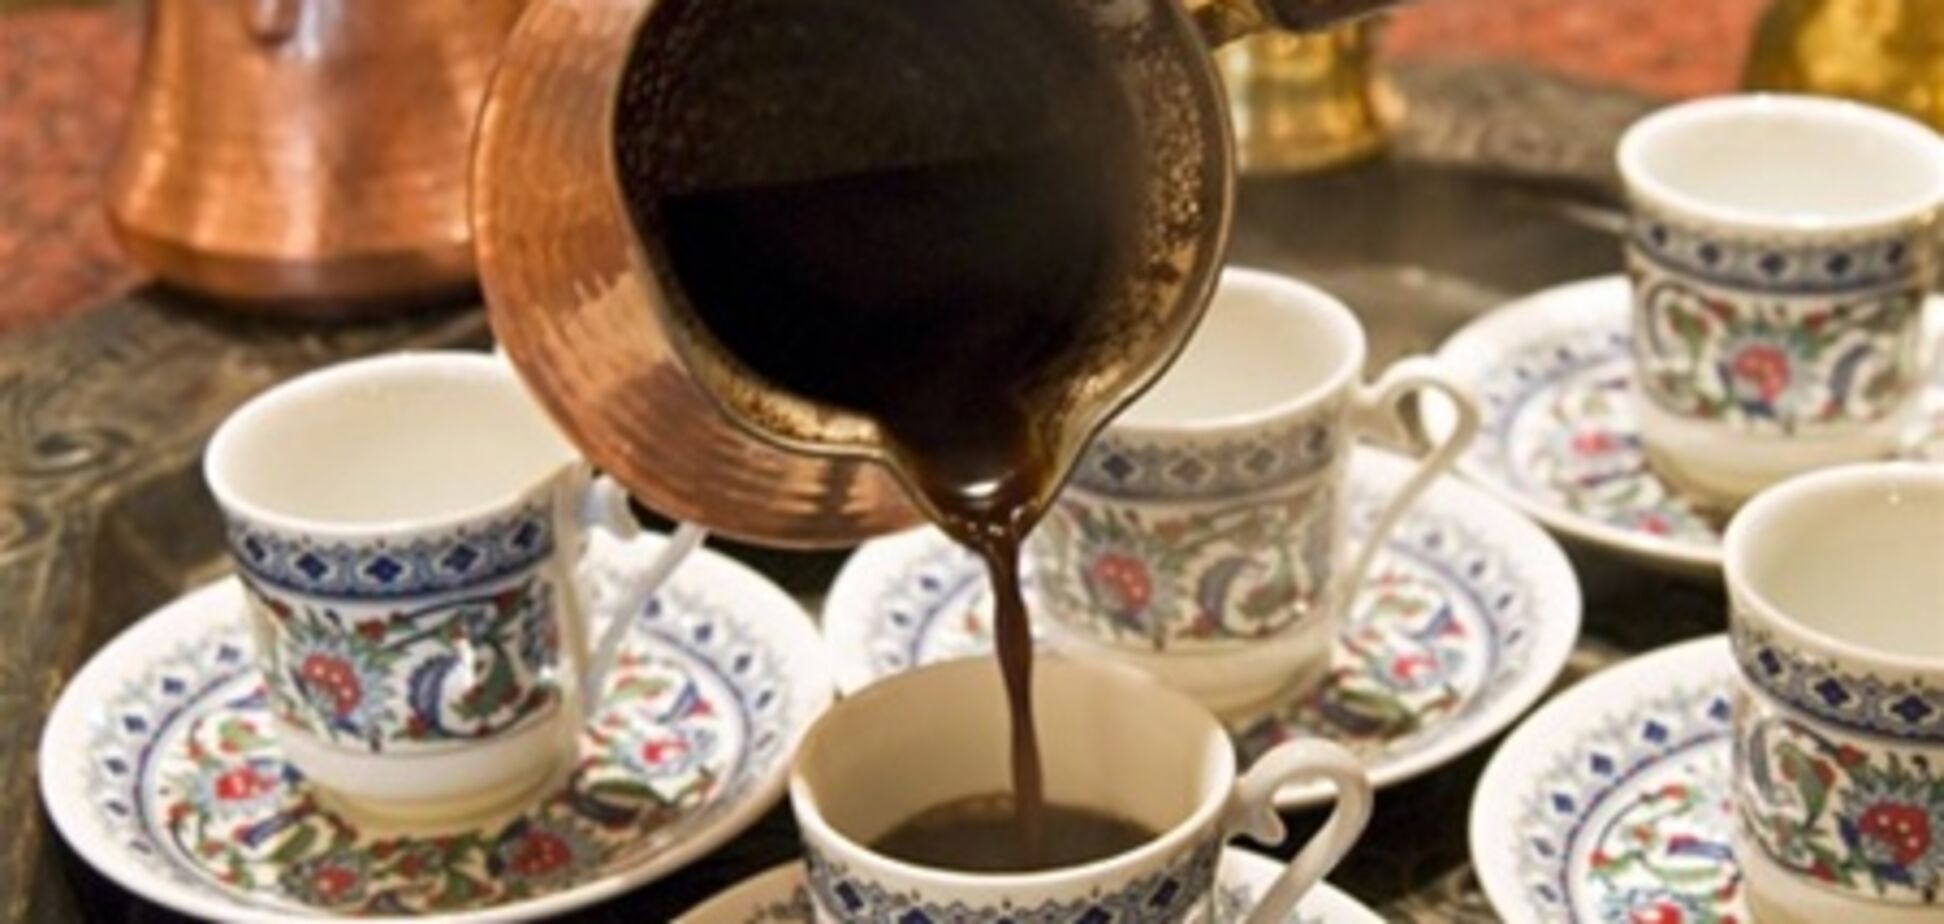 8 секретов хорошего кофе: варим в турке